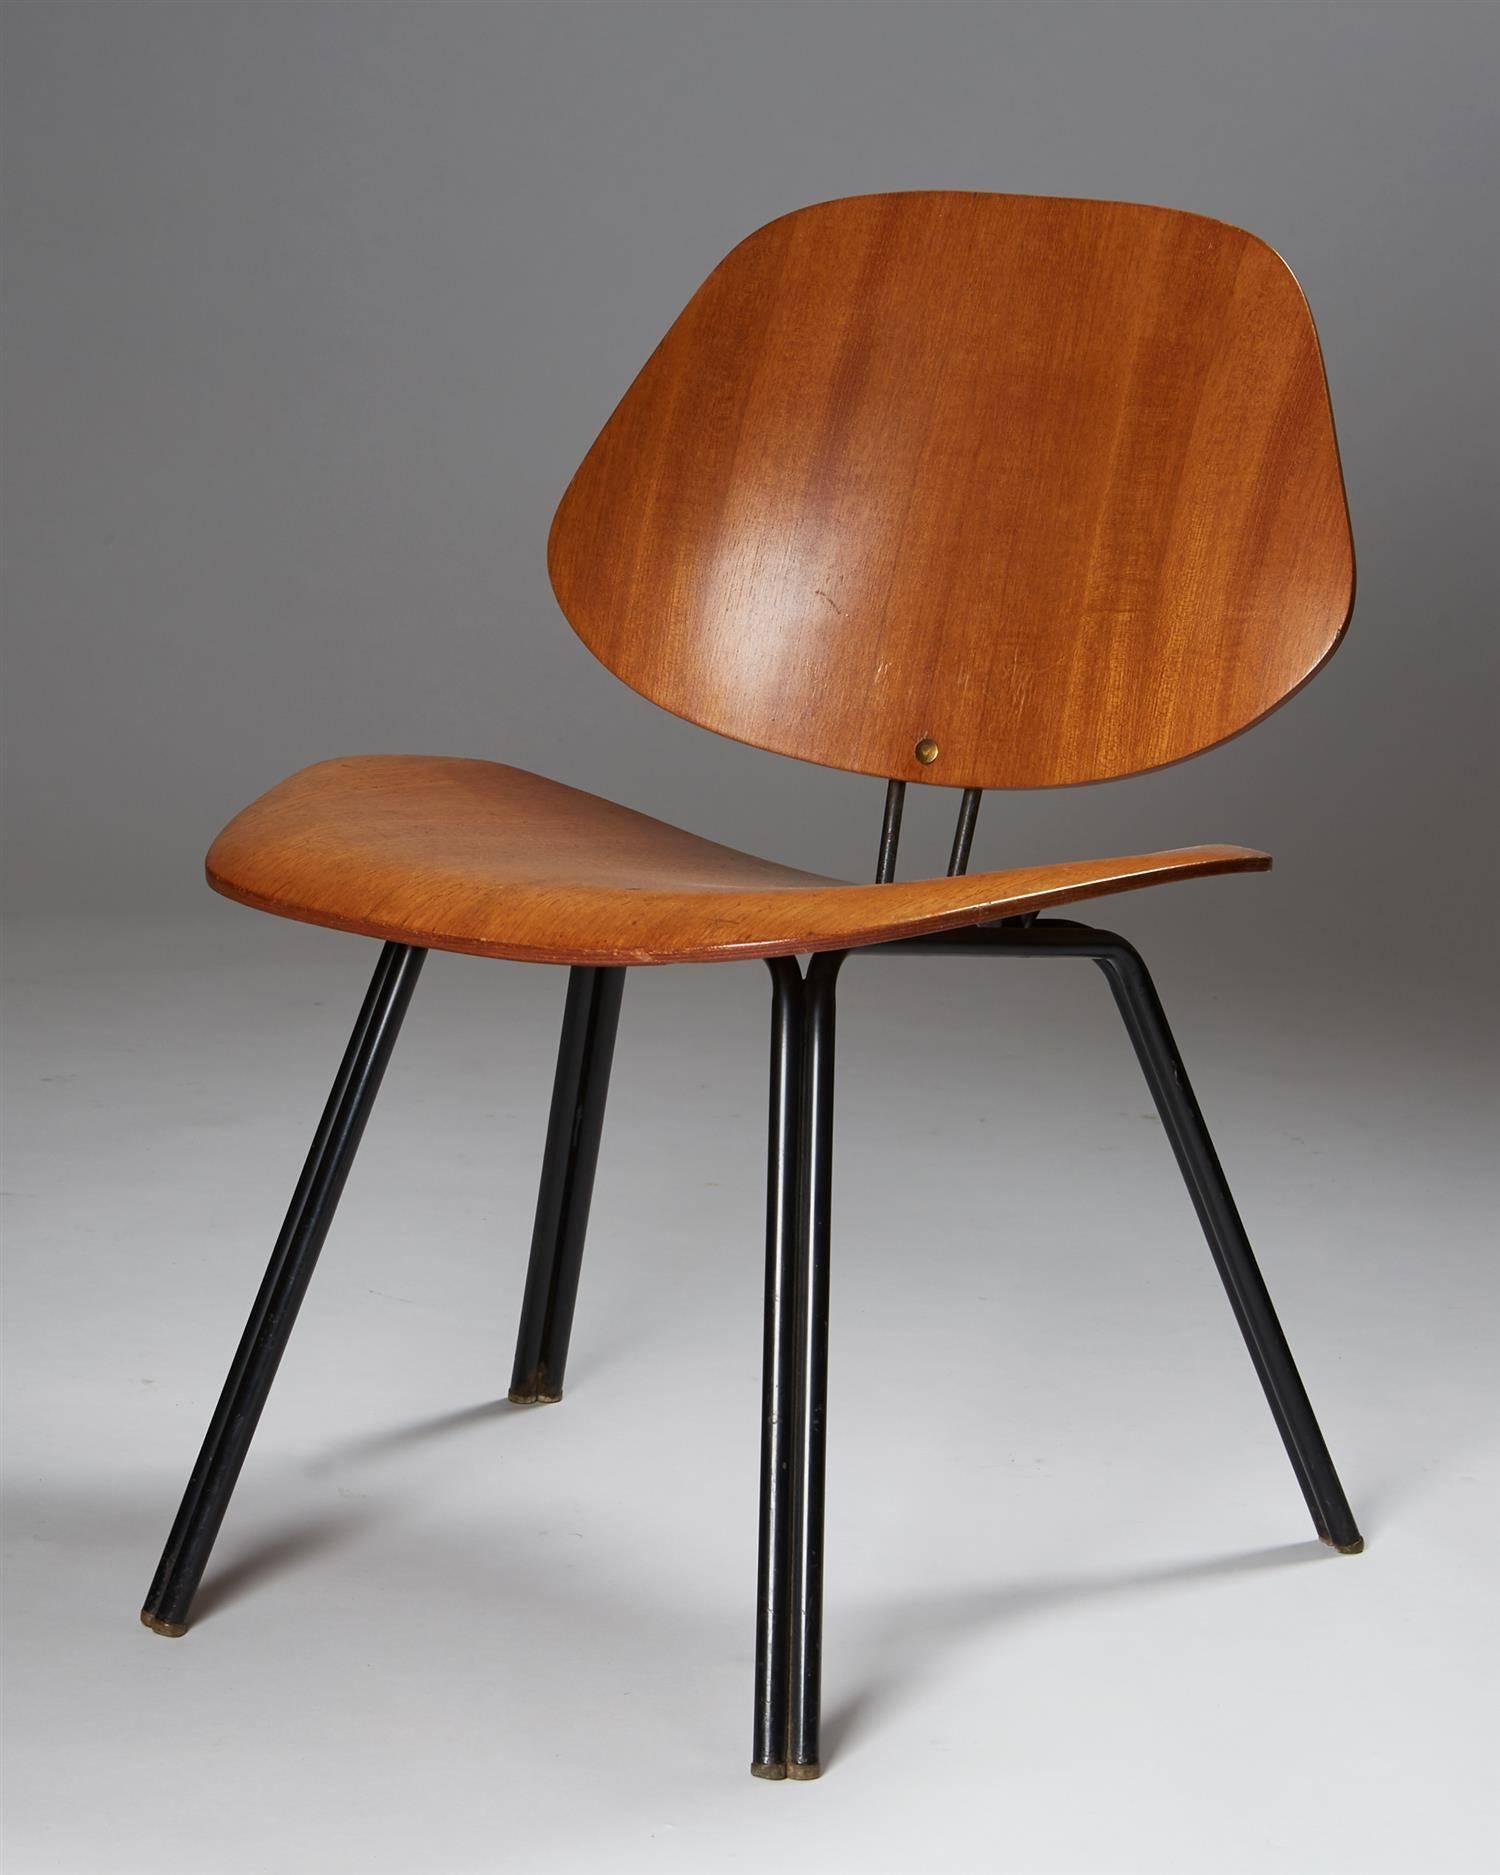 Stuhl, entworfen von Osvaldo Borsani für Techno, 
Italien, 1950er Jahre.

Sperrholz und lackierter Stahl.
 